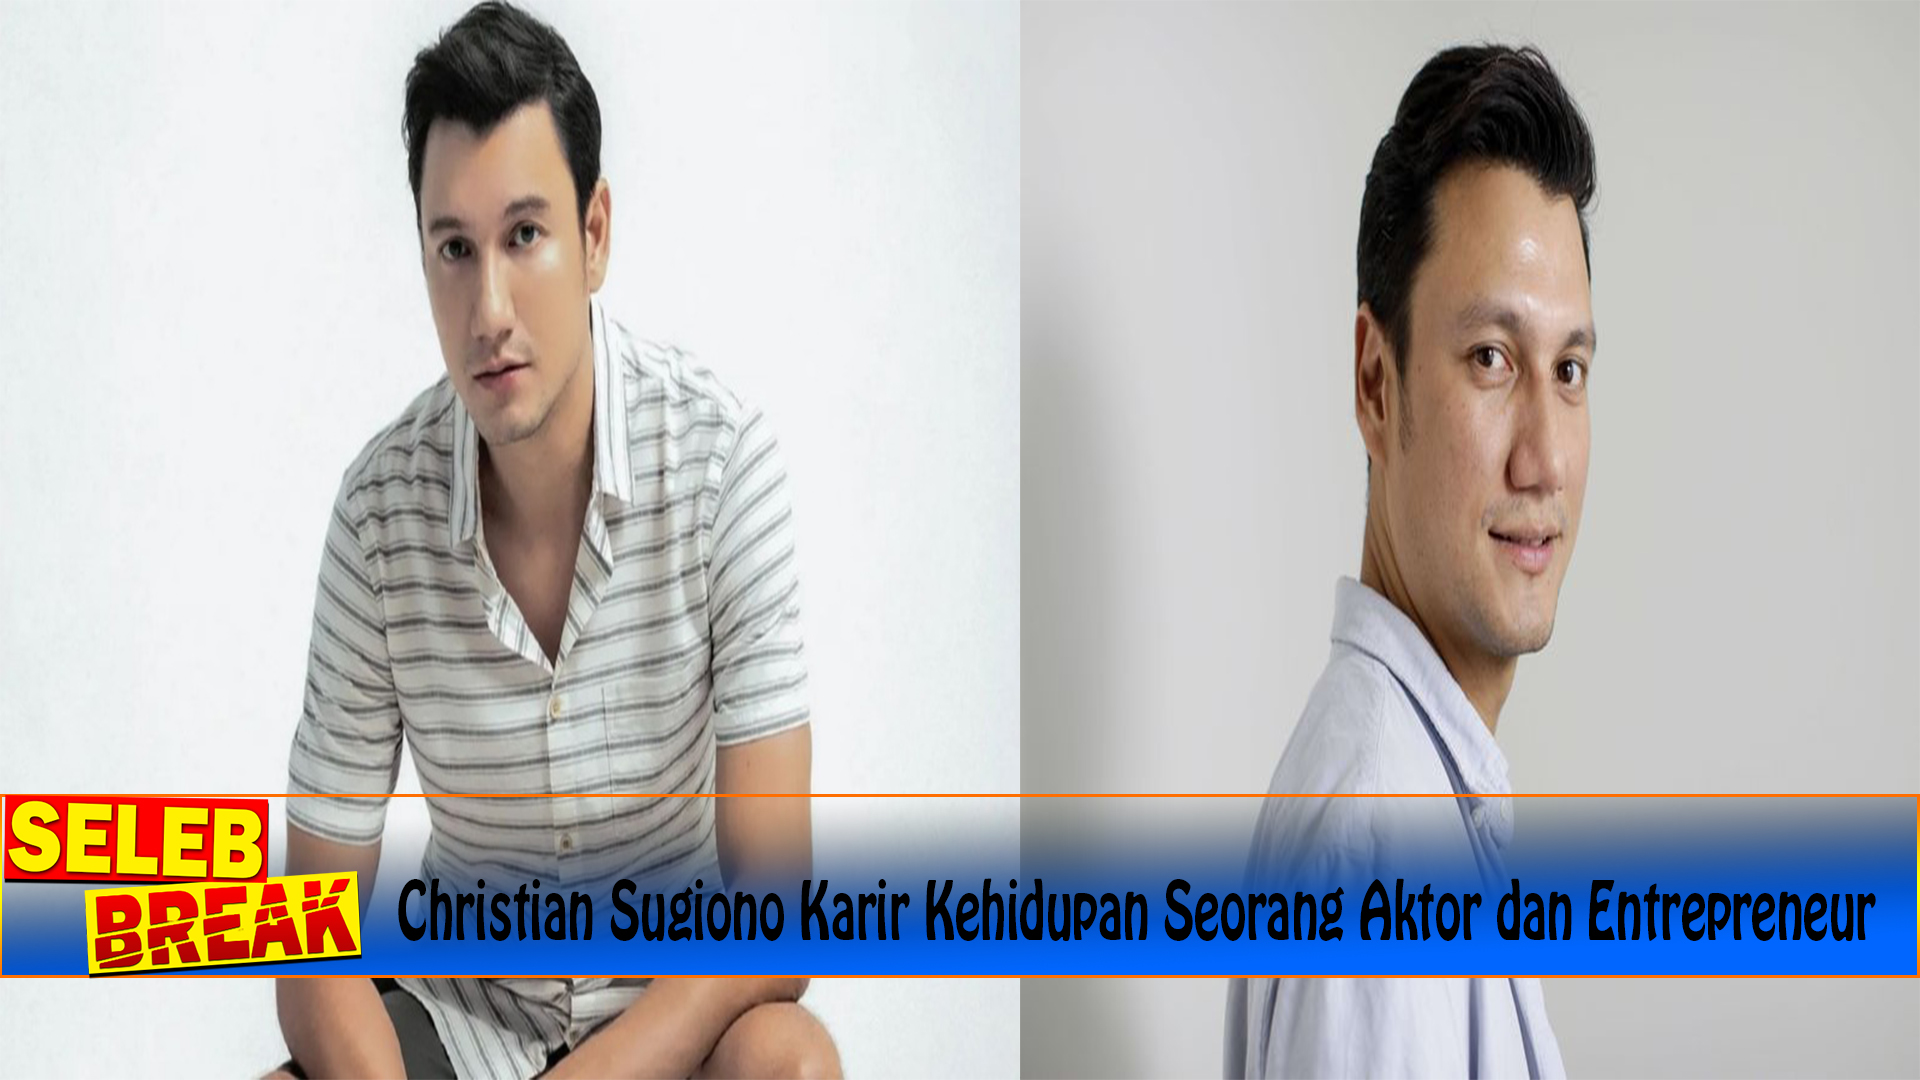 Christian Sugiono Karir Kehidupan Seorang Aktor dan Entrepreneur